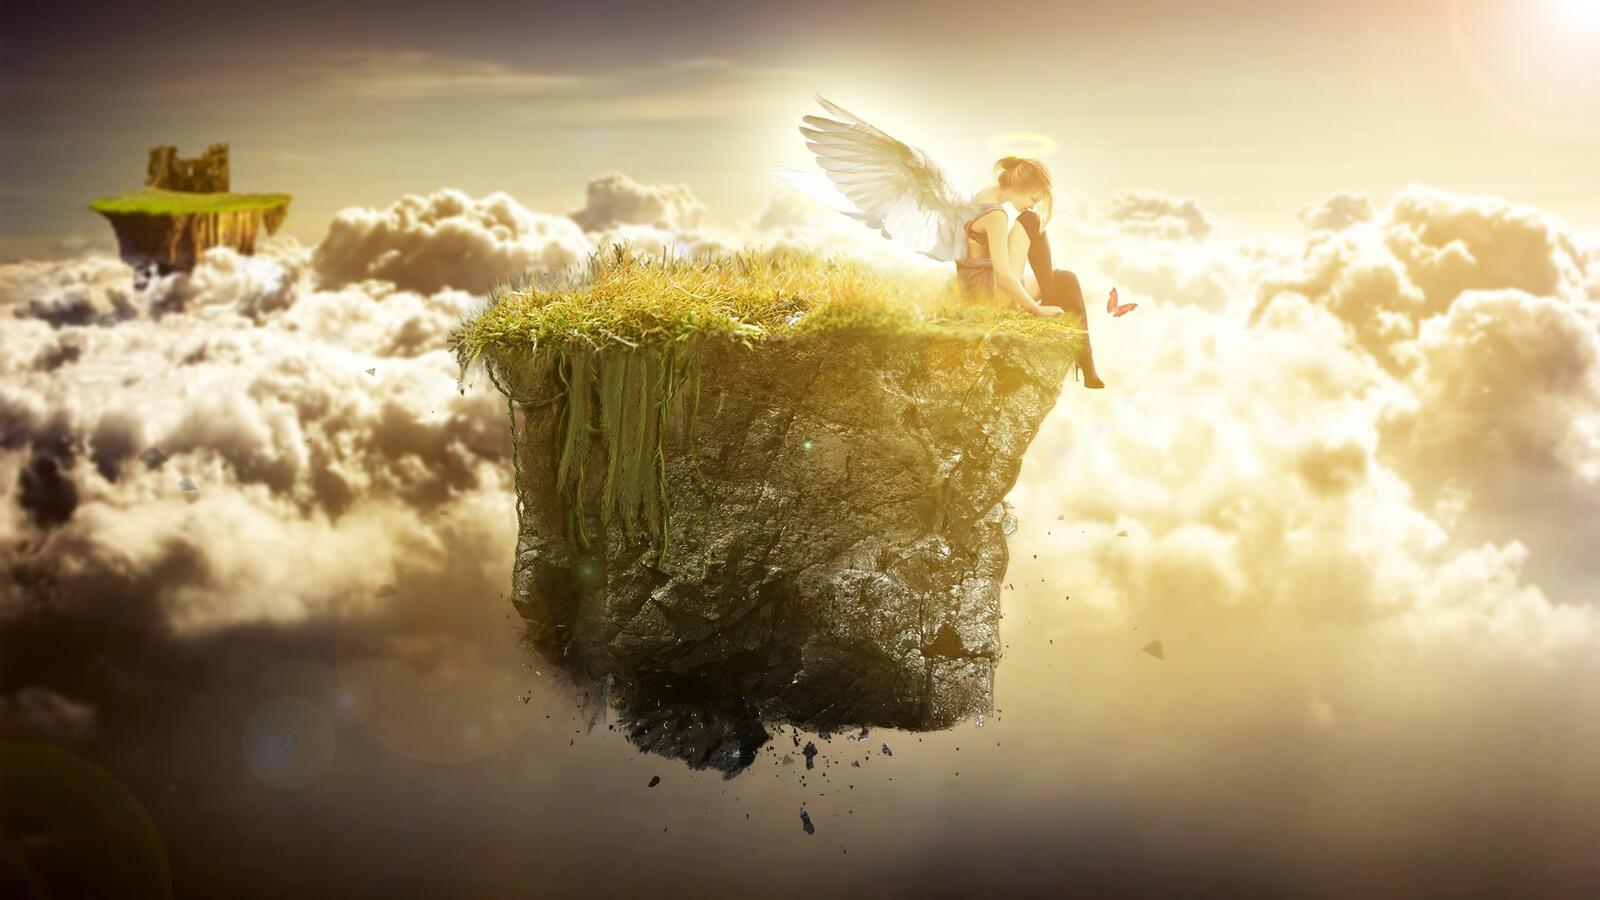 Бесплатное фото Ангел сидит на левитирующем острове в облаках